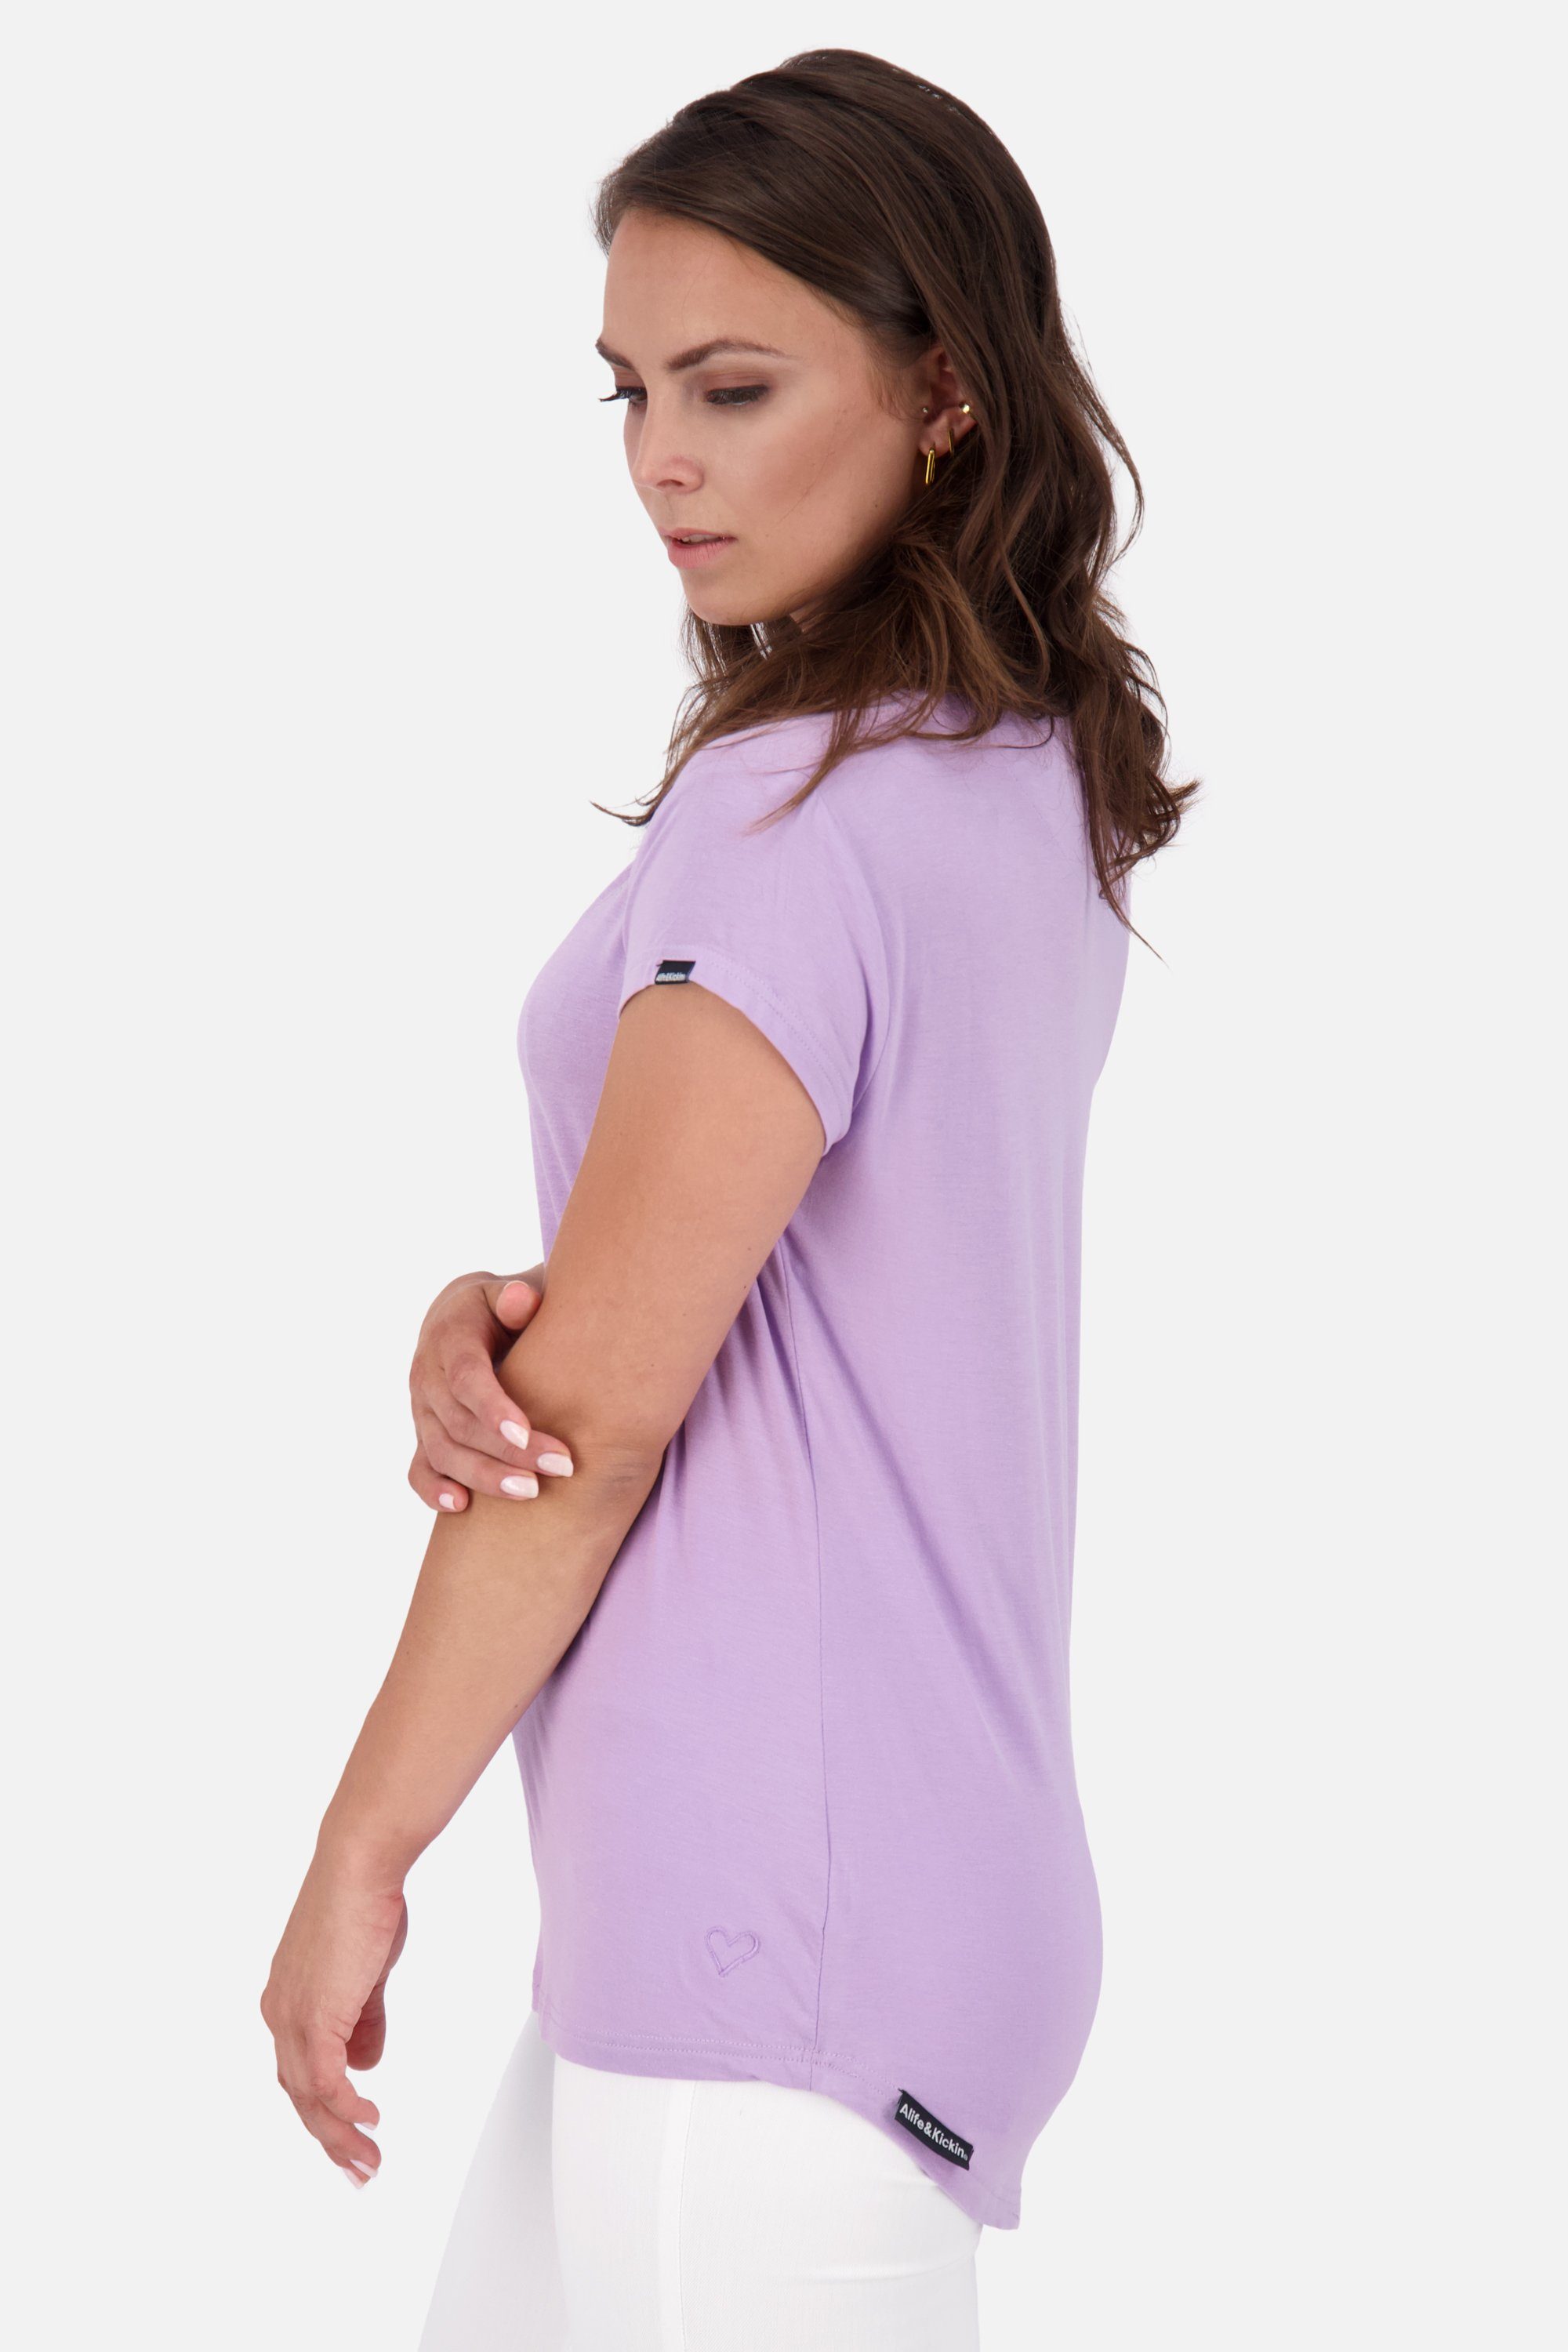 digital A lavender Rundhalsshirt Alife Kickin & Damen MimmyAK Kurzarmshirt, Shirt Shirt